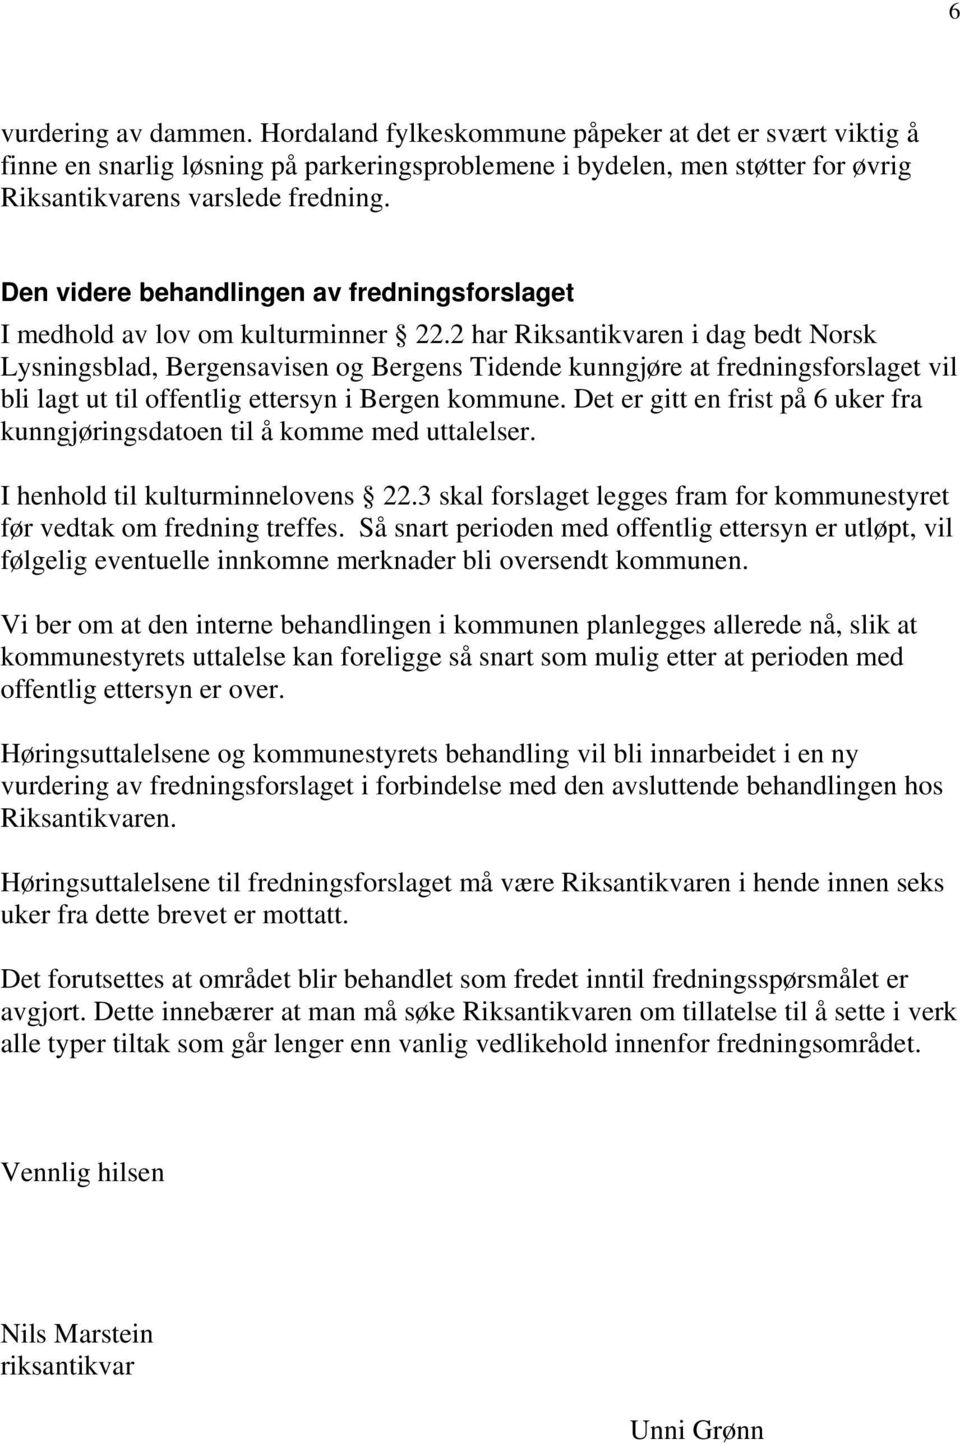 2 har Riksantikvaren i dag bedt Norsk Lysningsblad, Bergensavisen og Bergens Tidende kunngjøre at fredningsforslaget vil bli lagt ut til offentlig ettersyn i Bergen kommune.